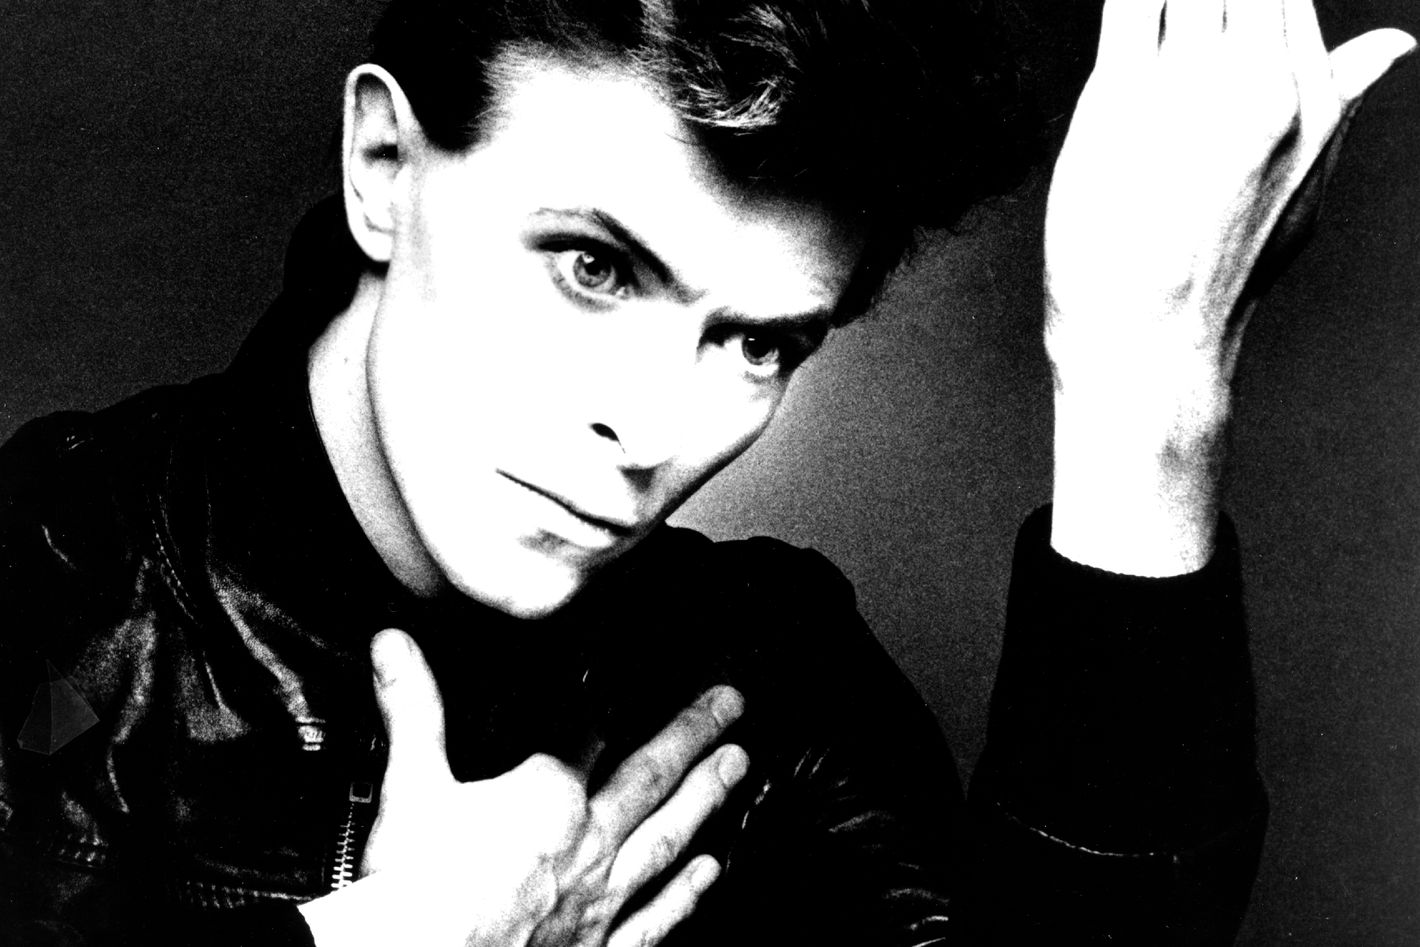 David Bowie Portrait Session Art Print by Michael Ochs Archives - Photos.com